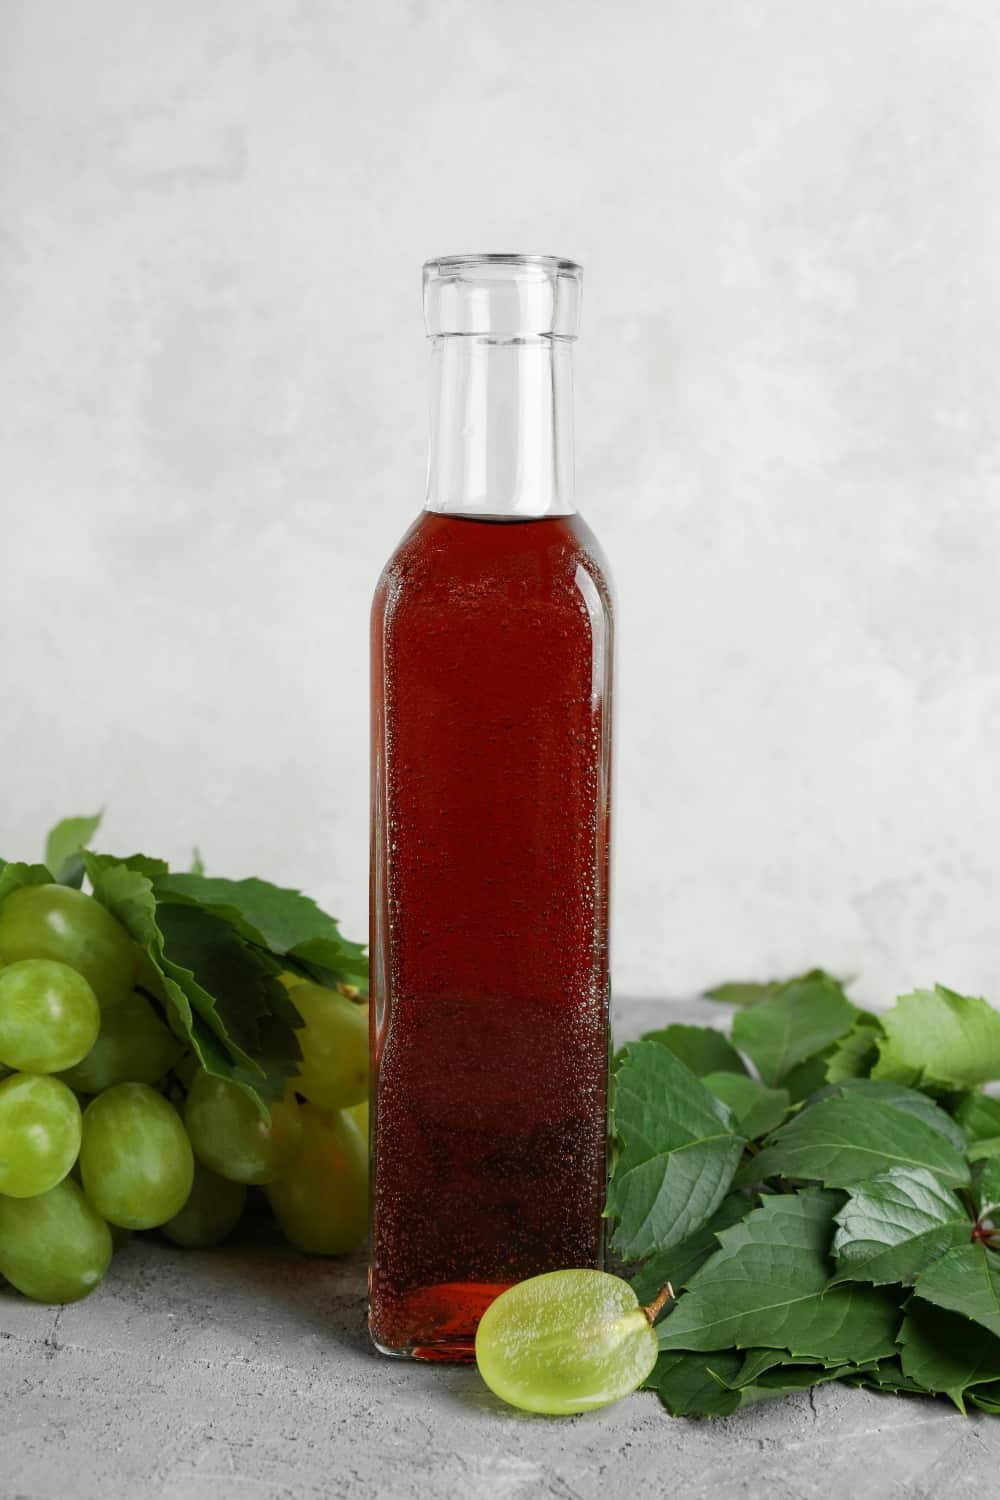 Botella de vinagre, uva y hojas sobre mesa de textura gris